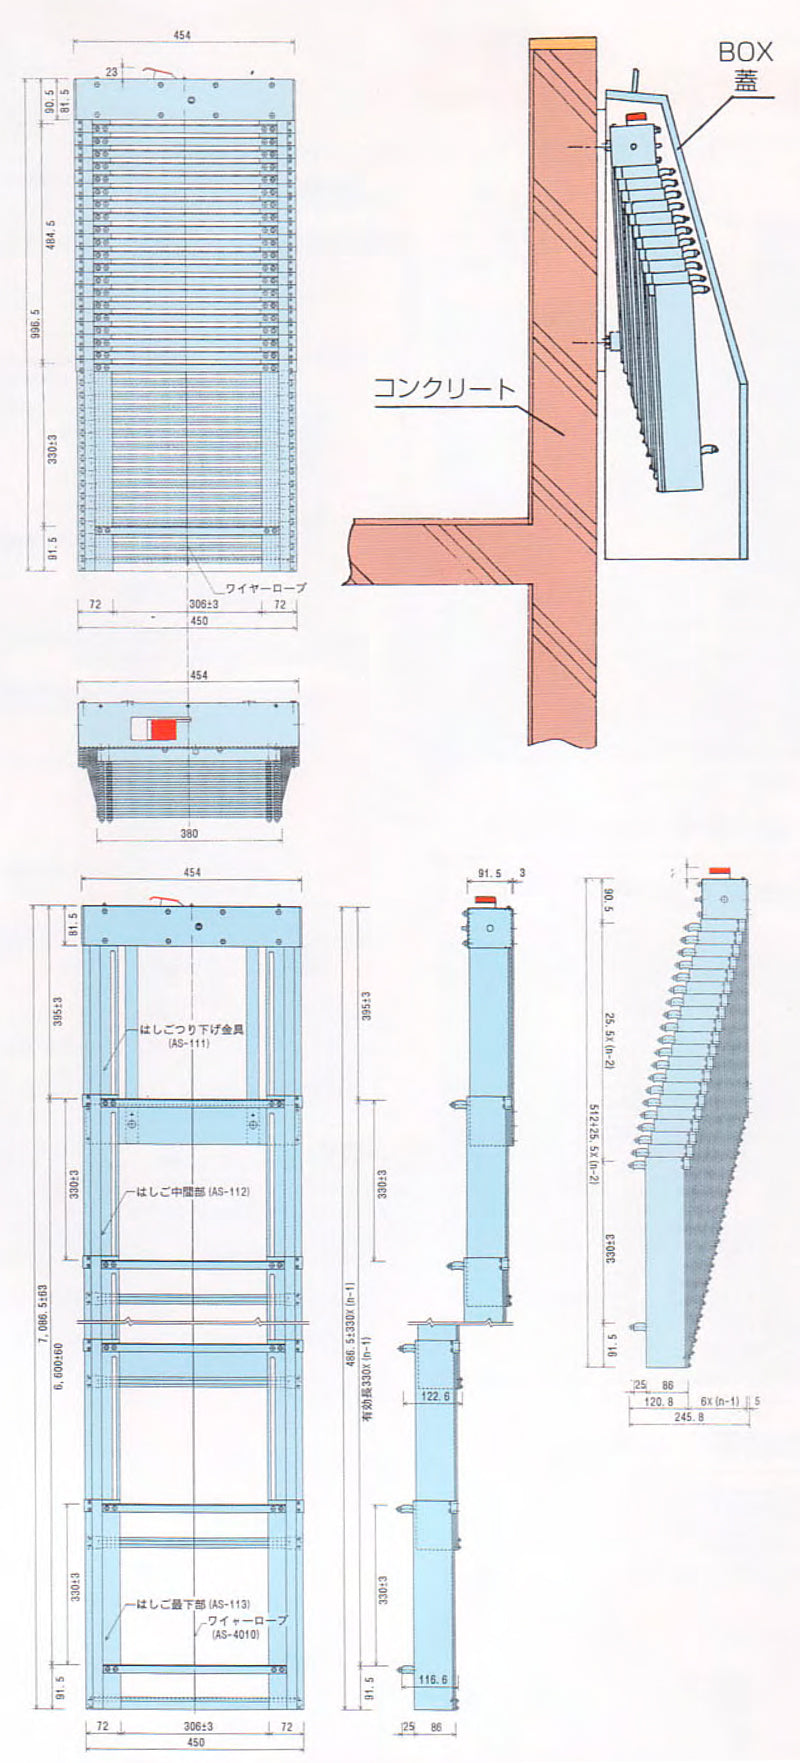 ORIRO SOS 6型 避難はしご収納BOXセット。柱状の縦棒で構成。揺れが少なく、安定した足元を確保。設置可能範囲の高さ 6,560mmまで